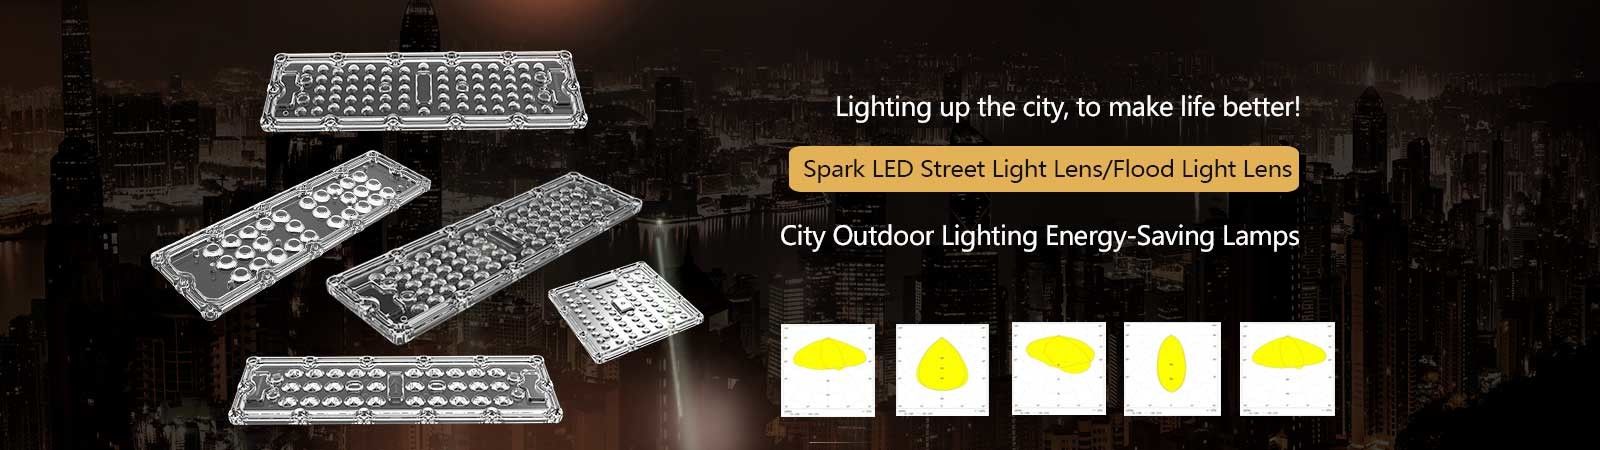 LED Street Light Lens